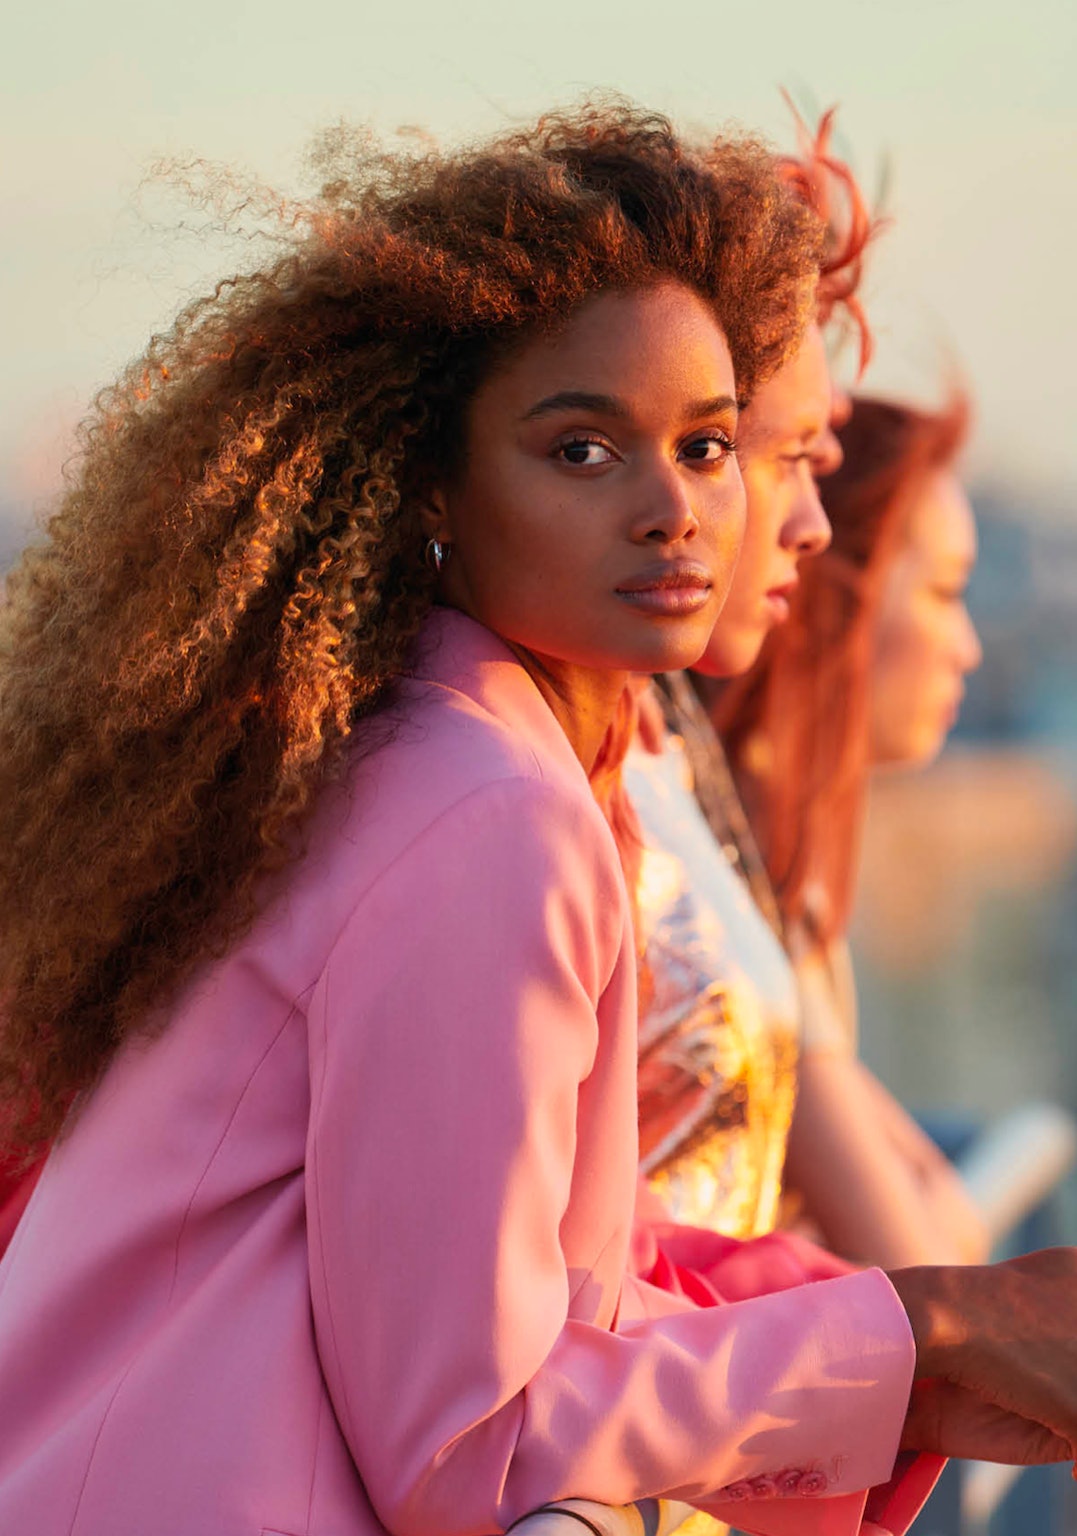 Η νέα συλλογή της Kérastase σημαίνει ότι μπορείτε να βάψετε τα μαλλιά σας χωρίς φόβο